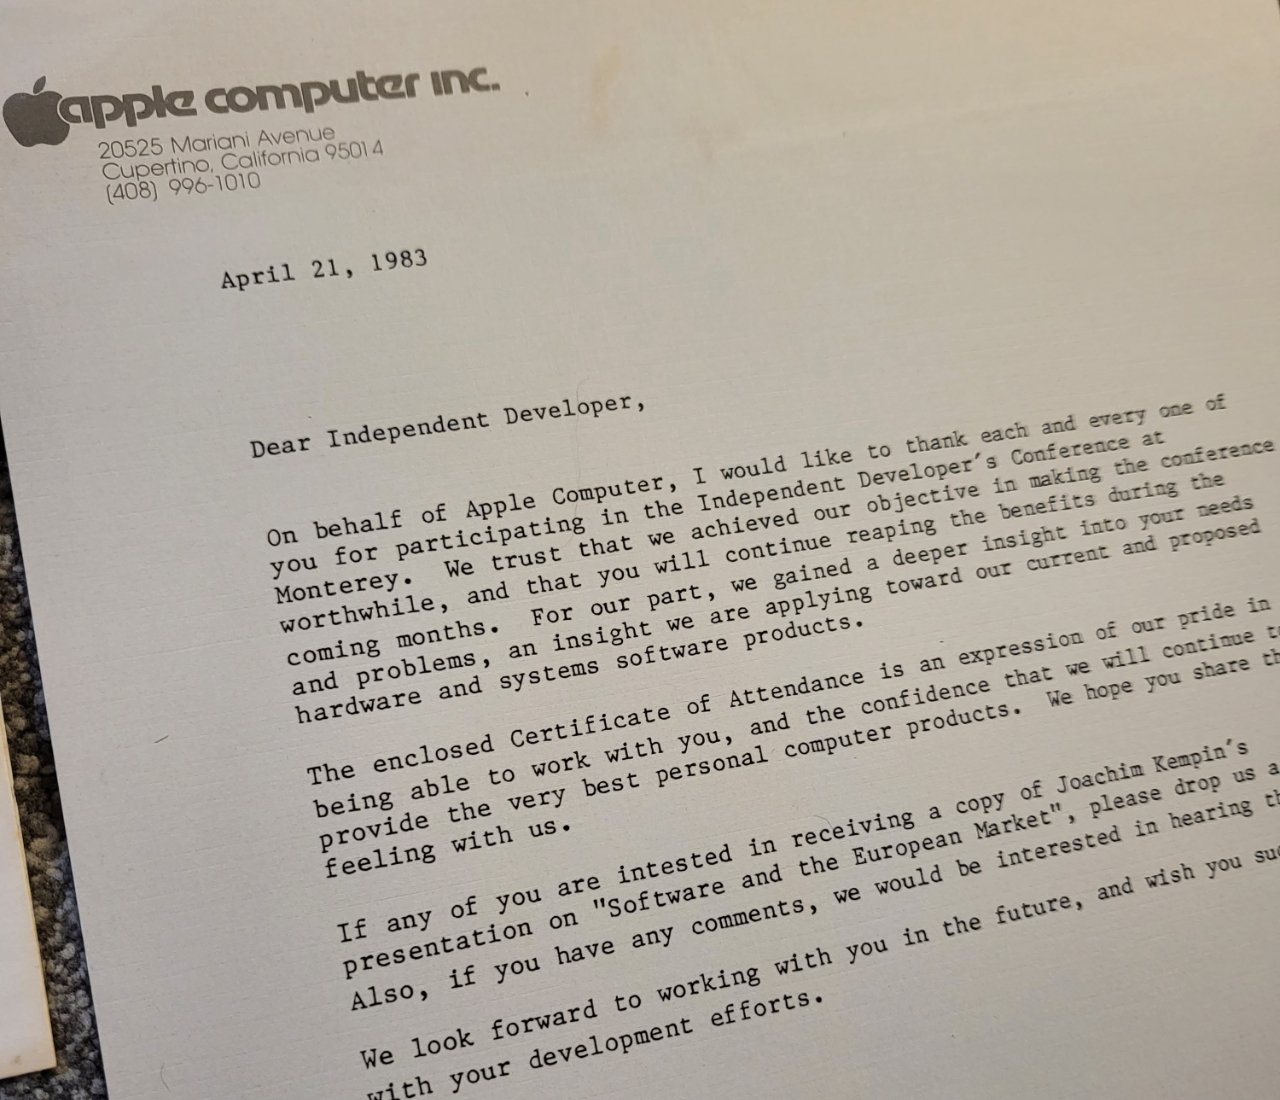 Фотография старого письма от Apple Computer Inc. от 21 апреля 1983 года, адресованного независимому разработчику и выражающего благодарность за участие в конференции.